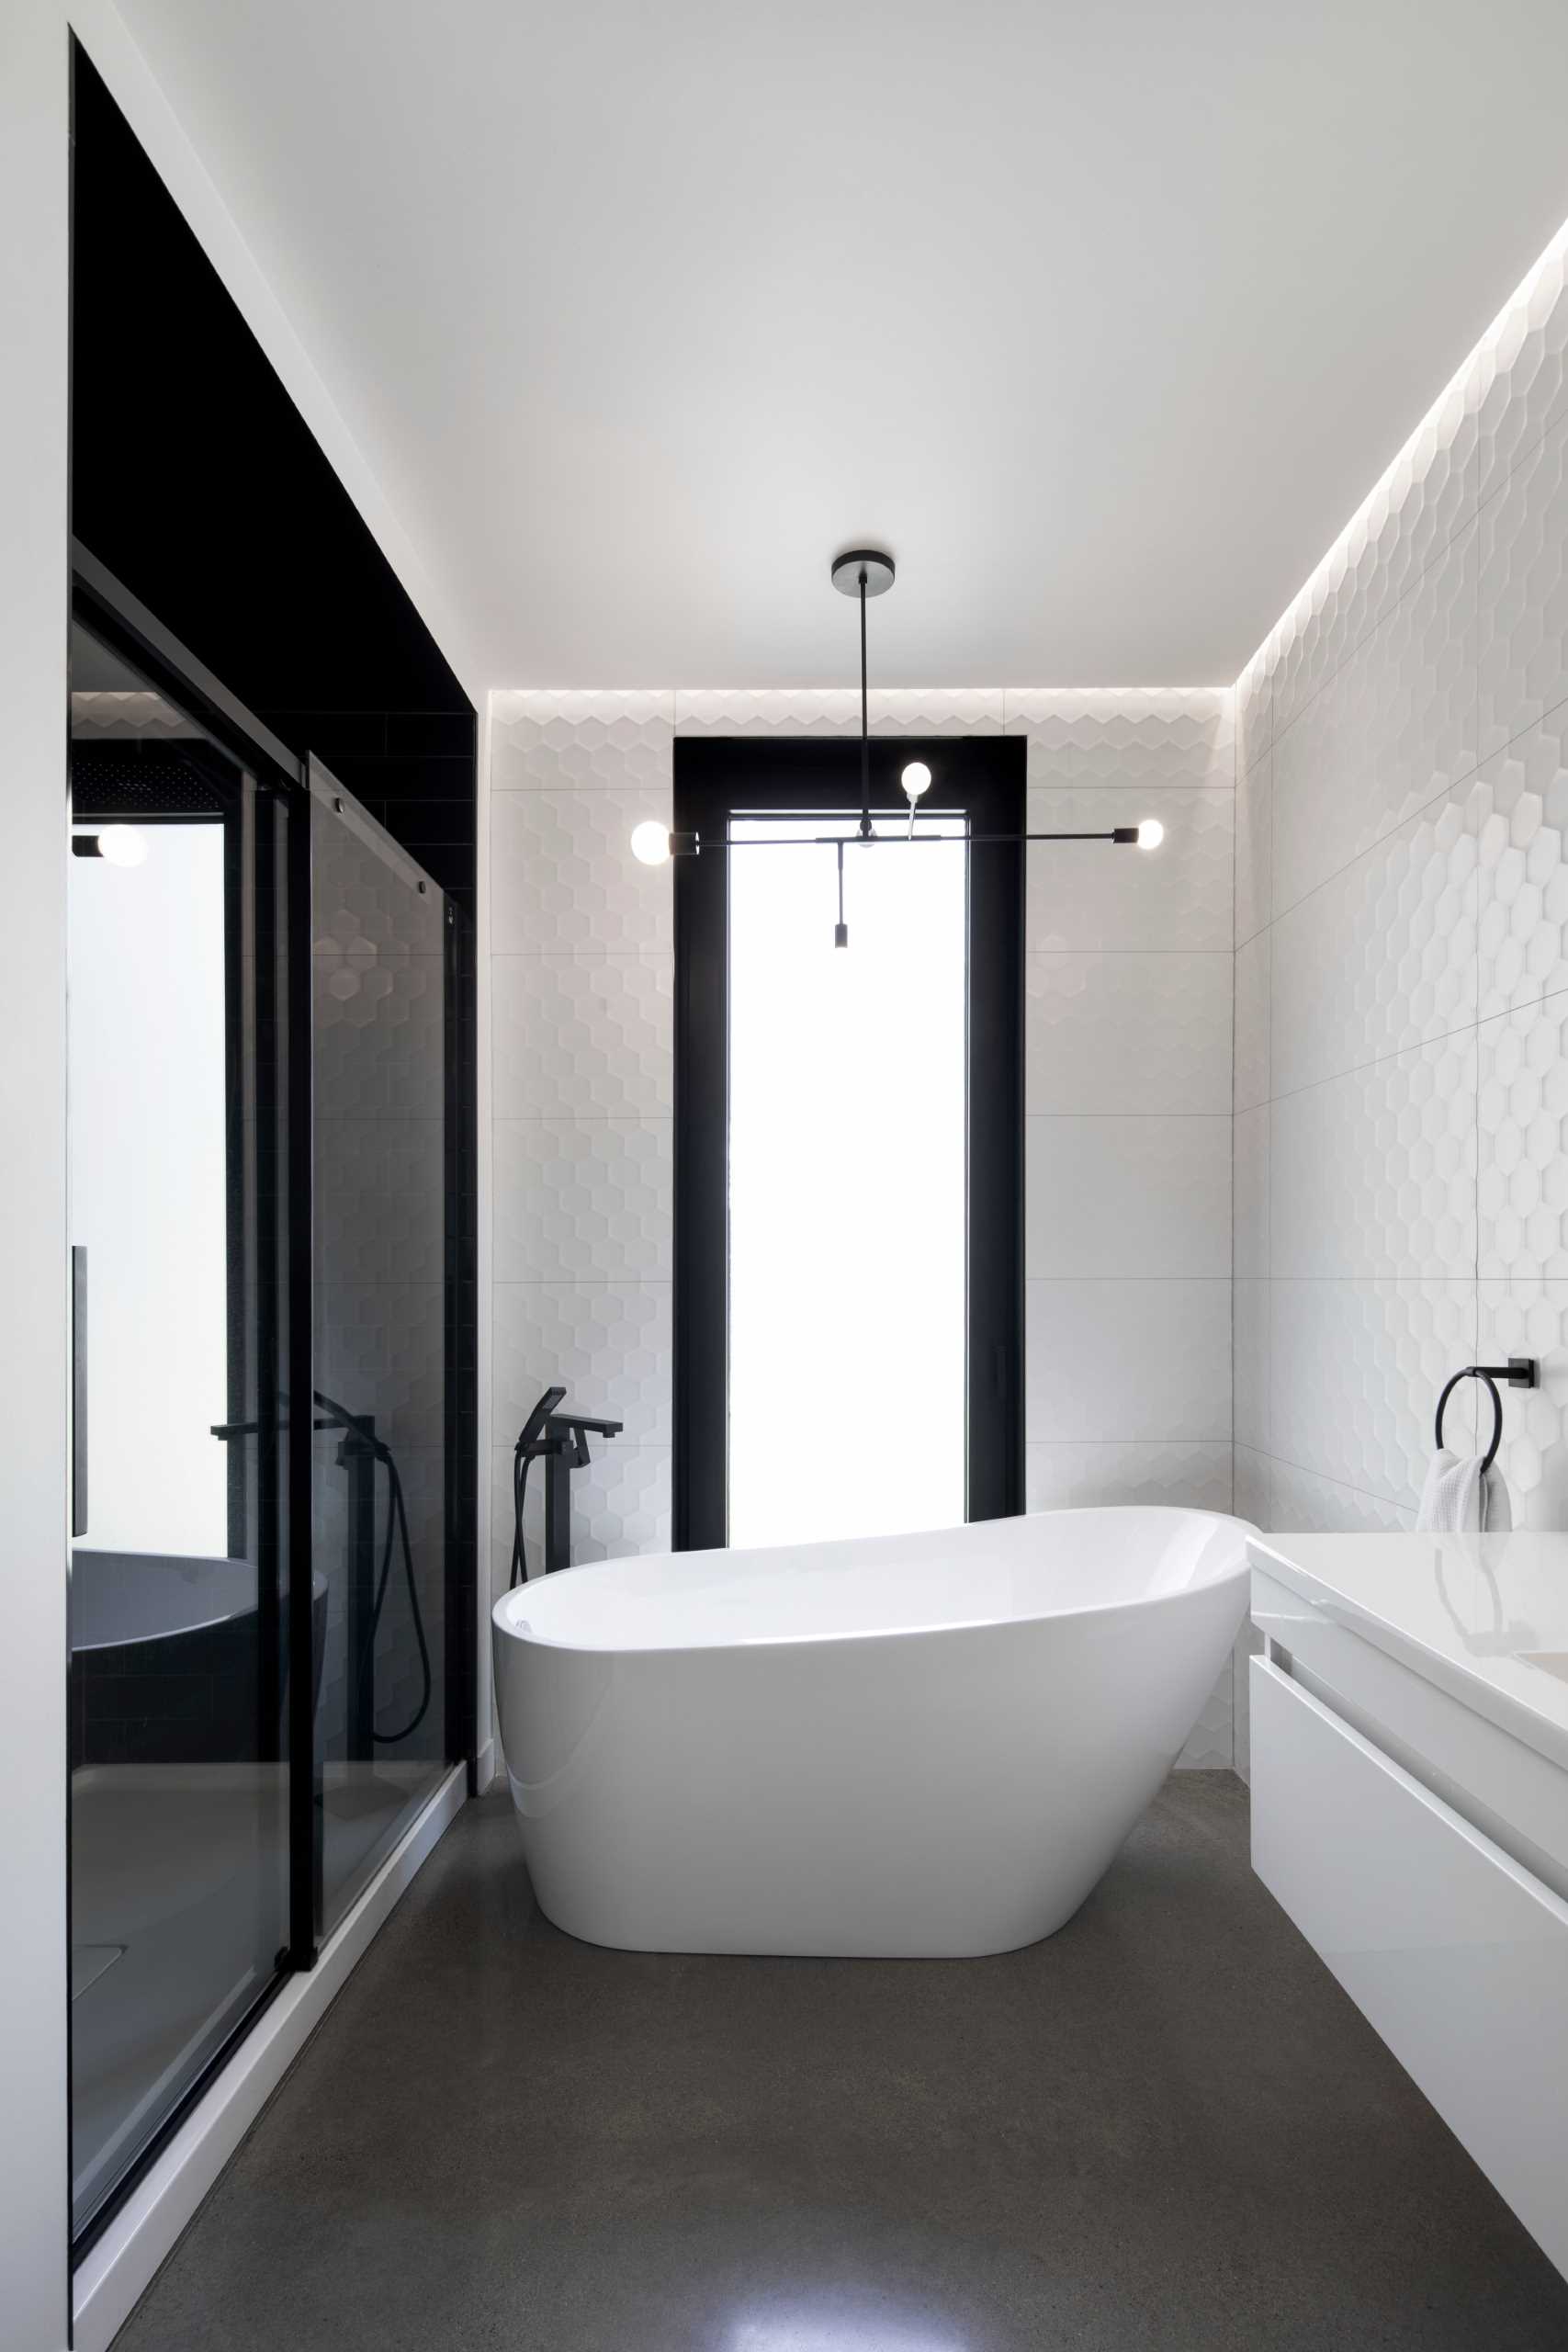 دیوارهای کاشی کاری شده از کف تا سقف یک ،صر بافتی به این حمام مدرن اضافه می کند که شامل یک وان حمام مستقل و دوش می شود.